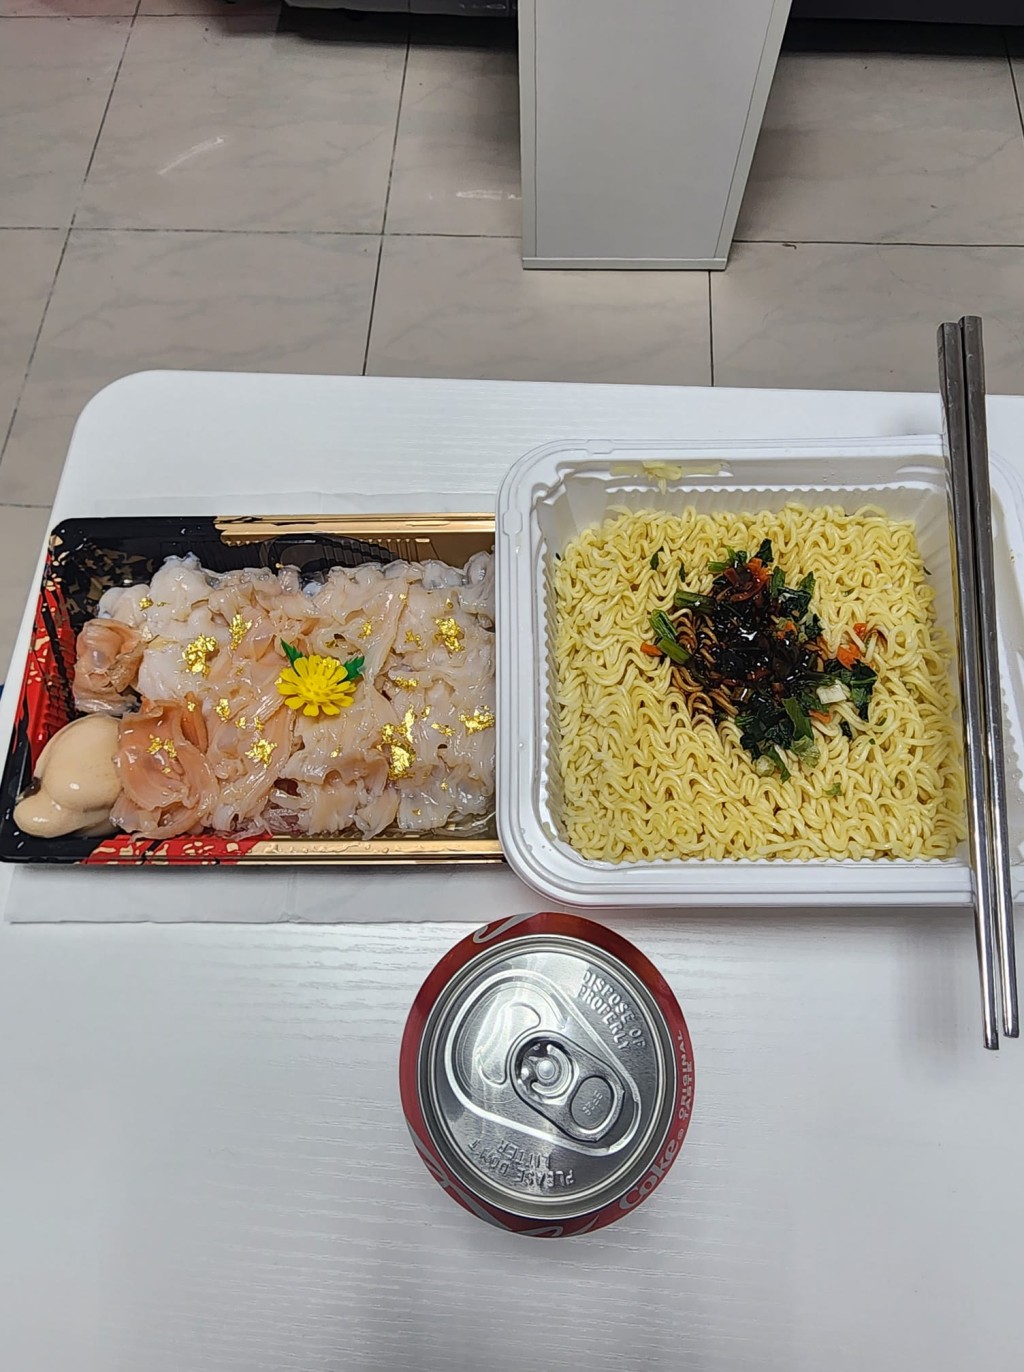 另一以汽水送的豪食配搭。fb「香港街市鱼类海鲜研究社」图片